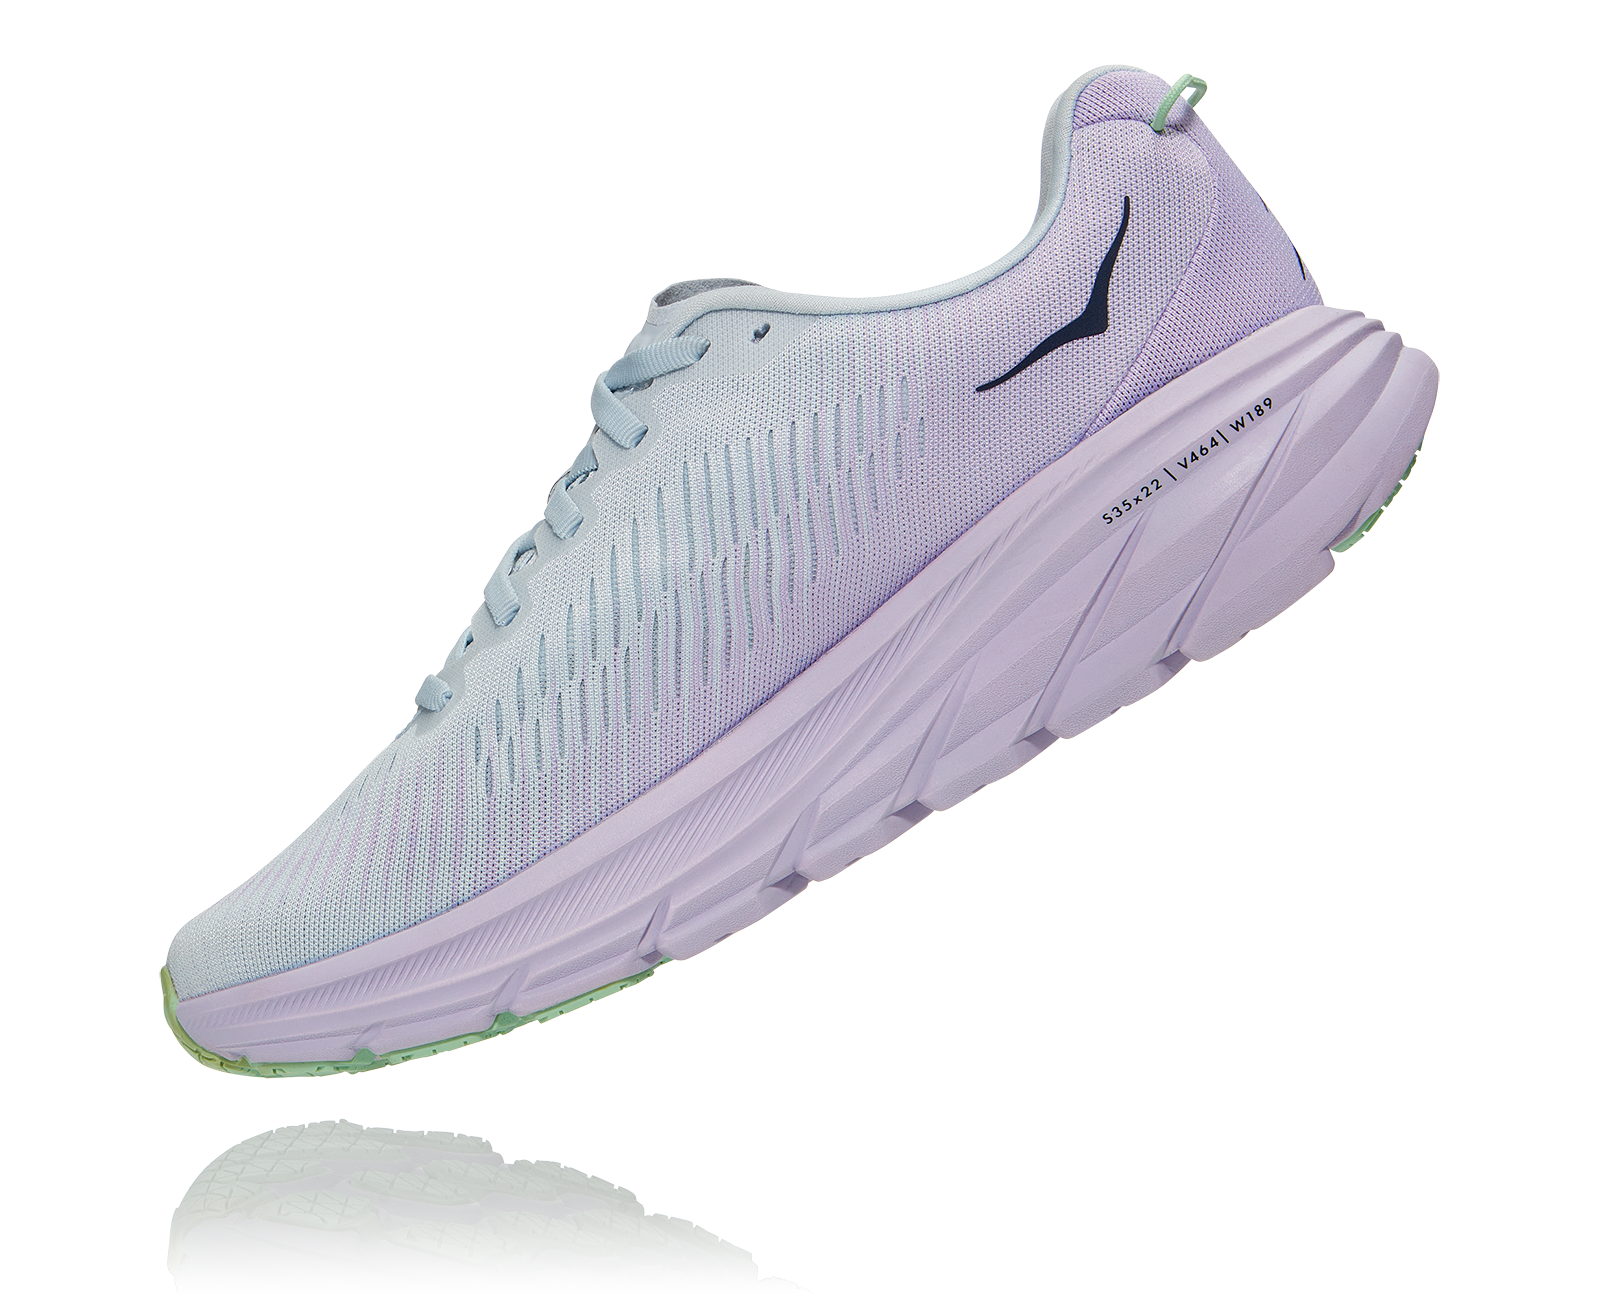 Hoka Women's Rincon 3 running shoe, wide fit, lightweight, racing shoe, road running shoe, light gray and lilac